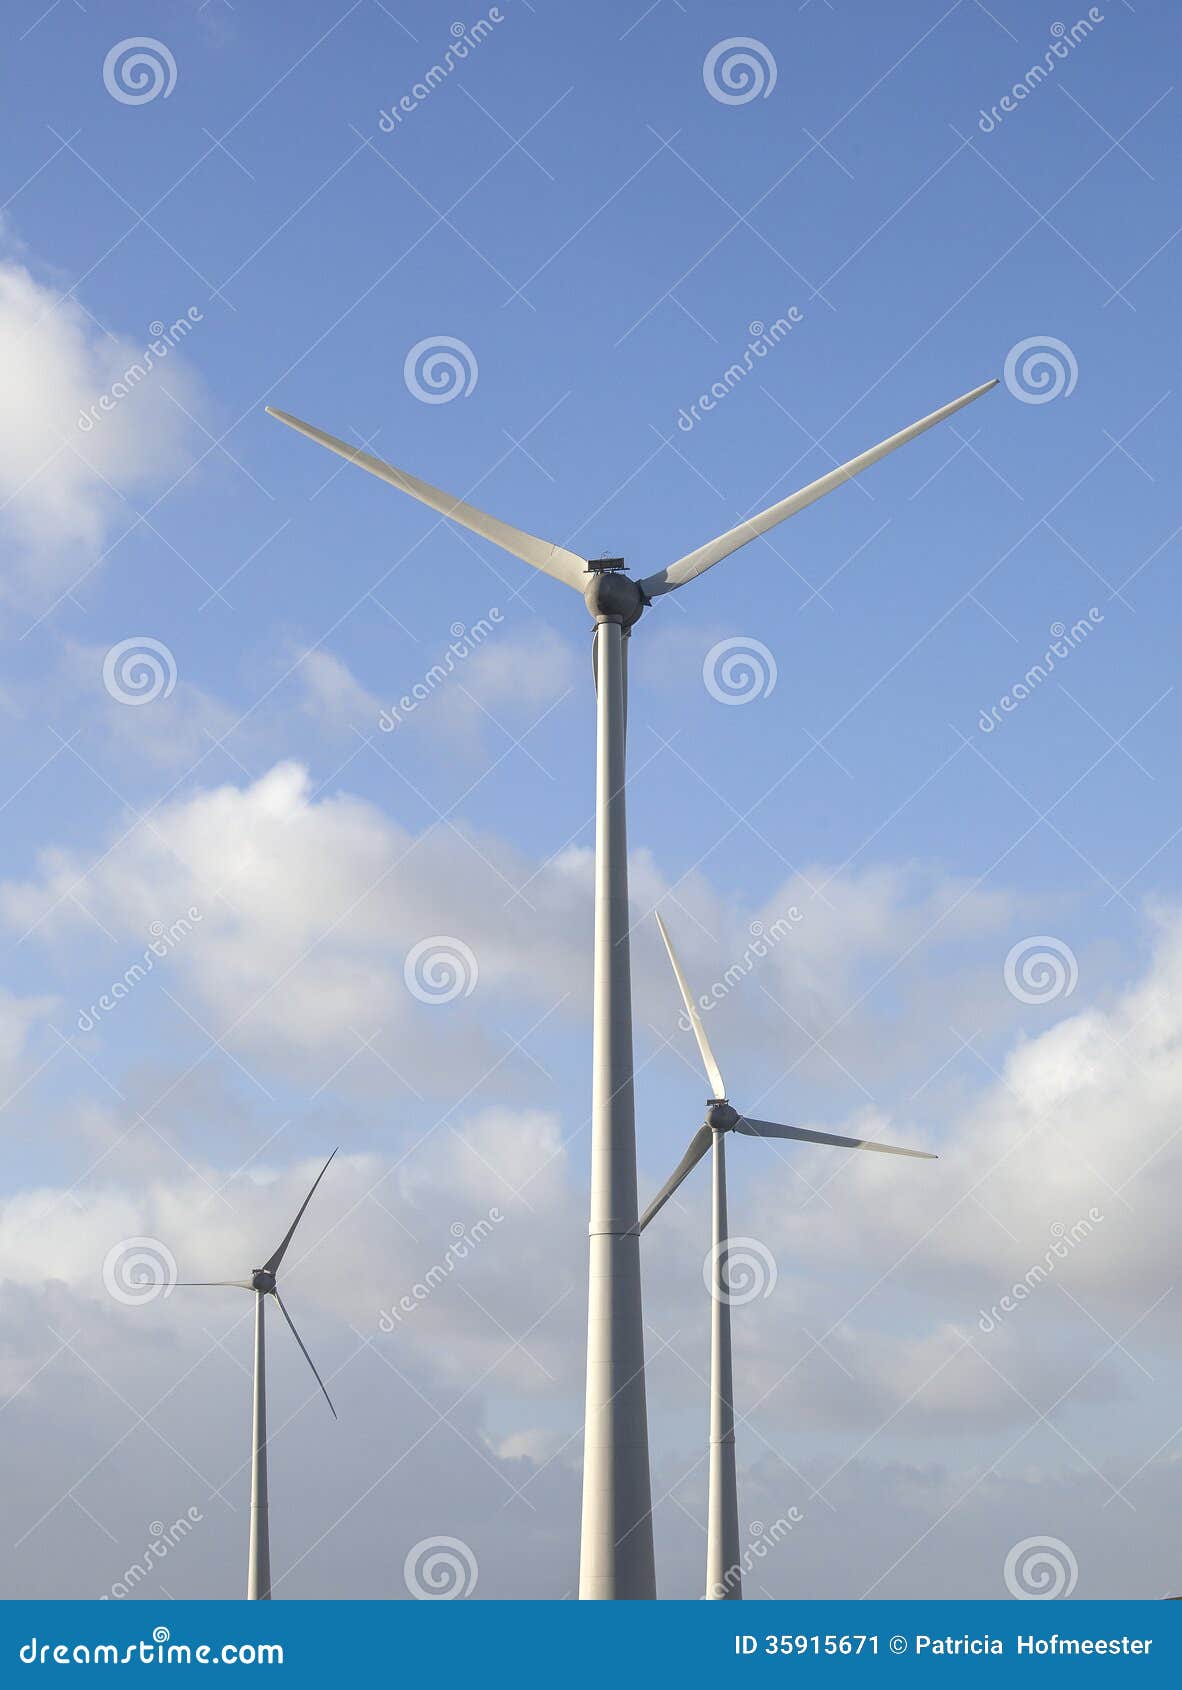 Wind Turbines Stock Image - Image: 35915671